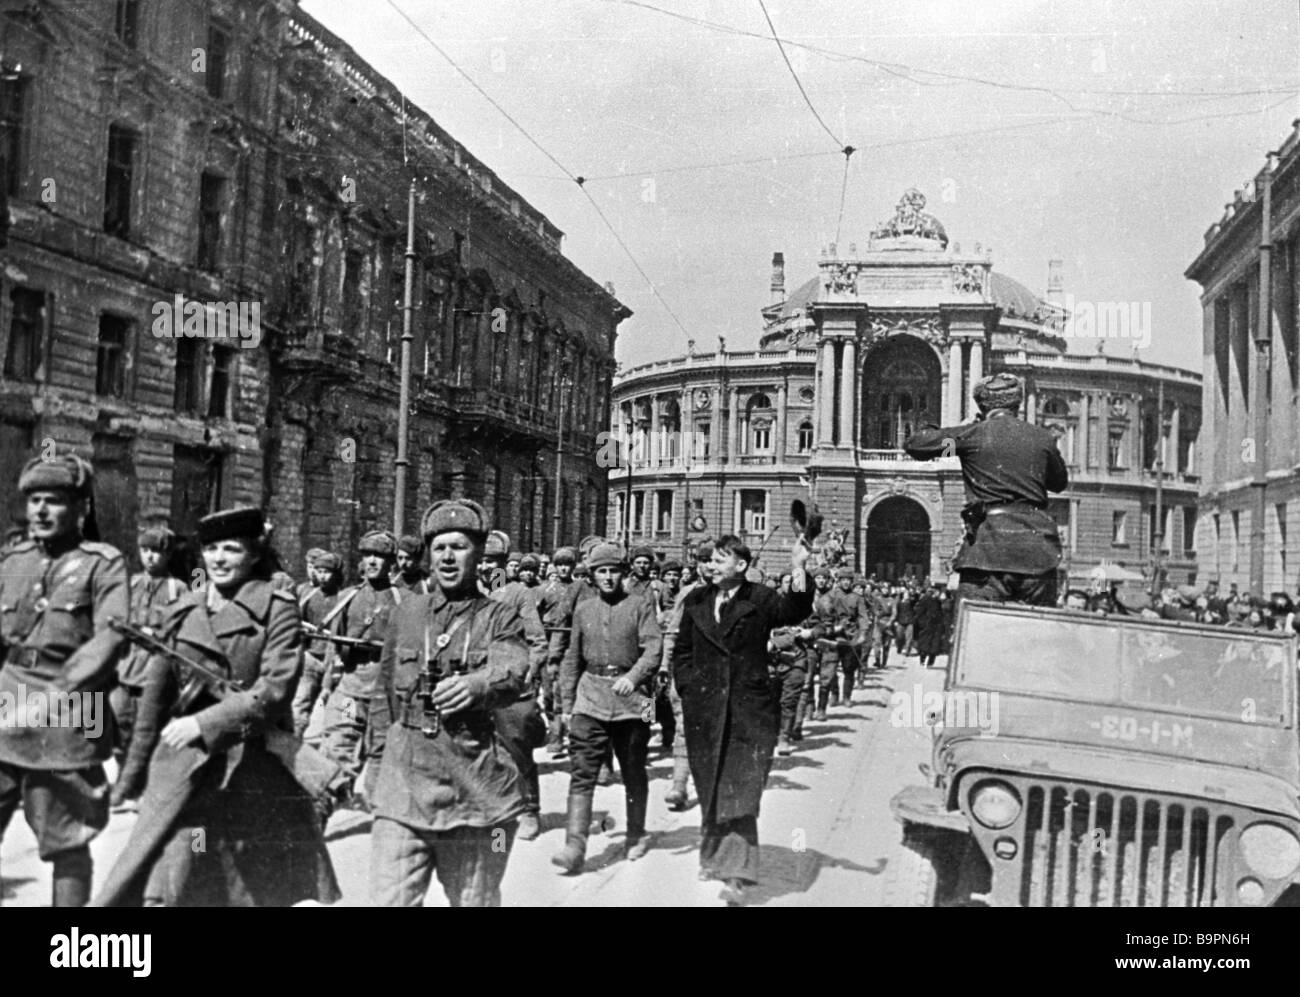 10 апреля 1944 года. Одесса 10 апреля 1944 года. Освобождение Одессы 1941. День освобождения Одессы от румынско-немецких войск 1944г.. Одесса в Великую отечественную войну освобождение.